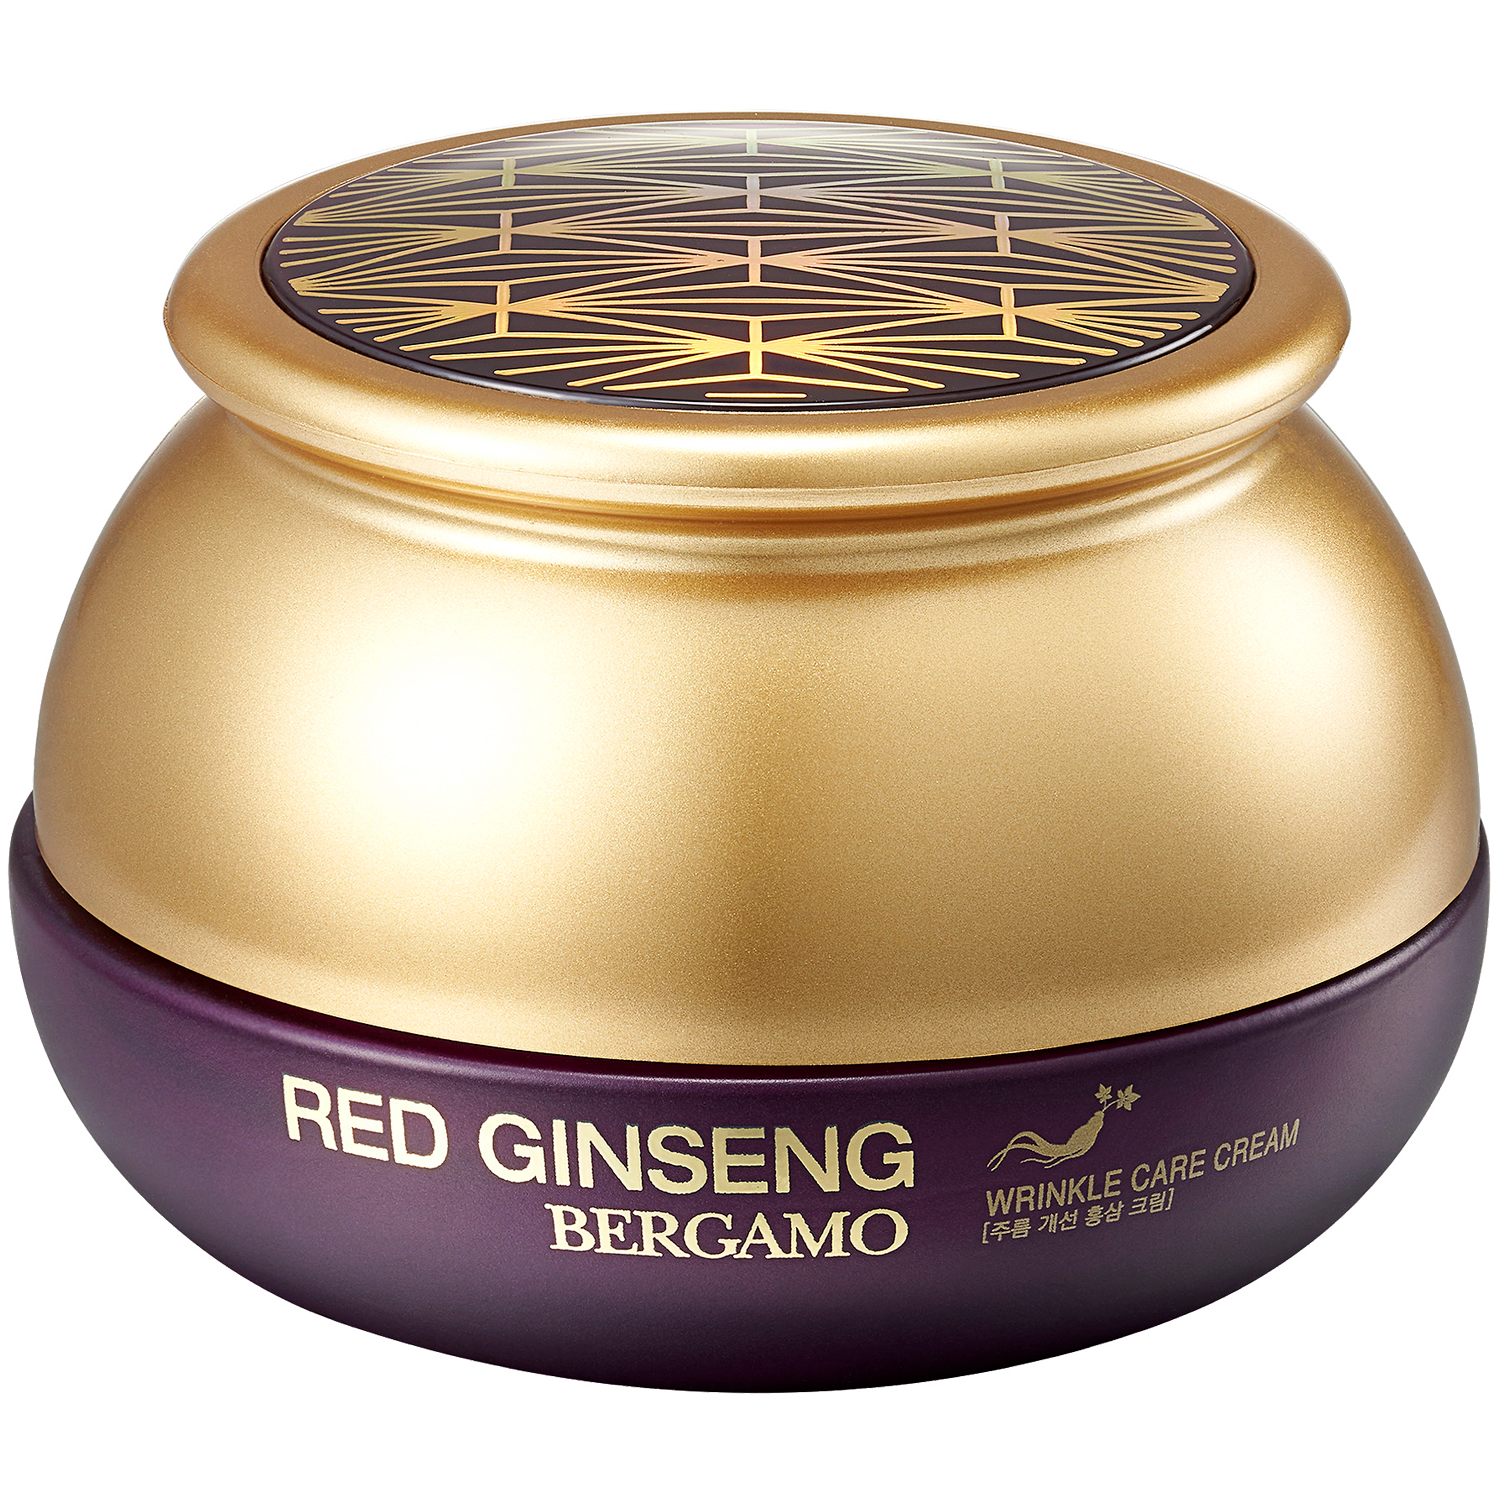 Bergamo Red Ginseng крем для лица против морщин с красным женьшенем, 50 г цена и фото